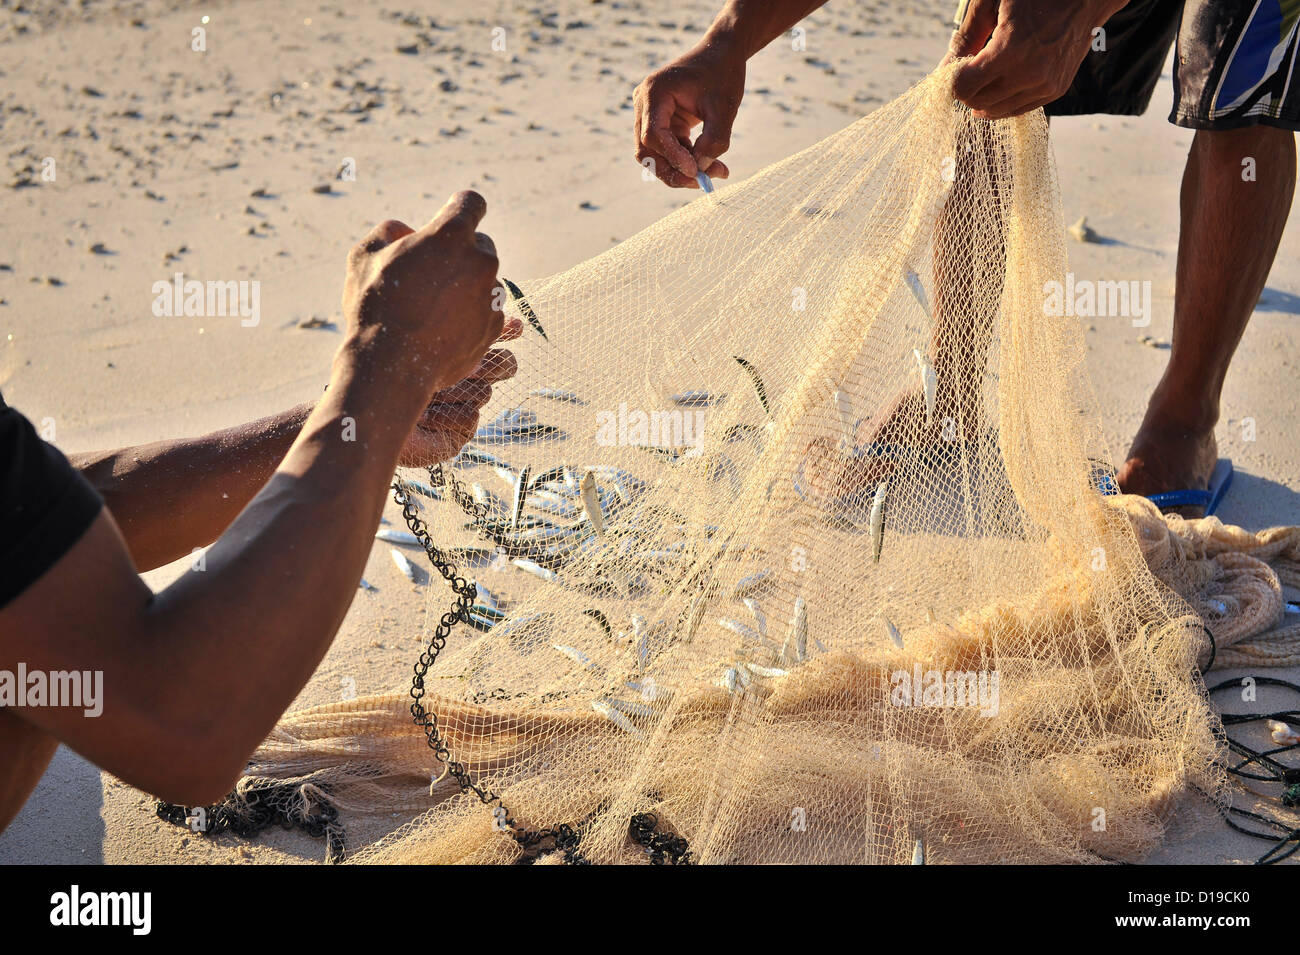 La pesca di bianchetti, Gili Trawangan, Indonesia Foto Stock